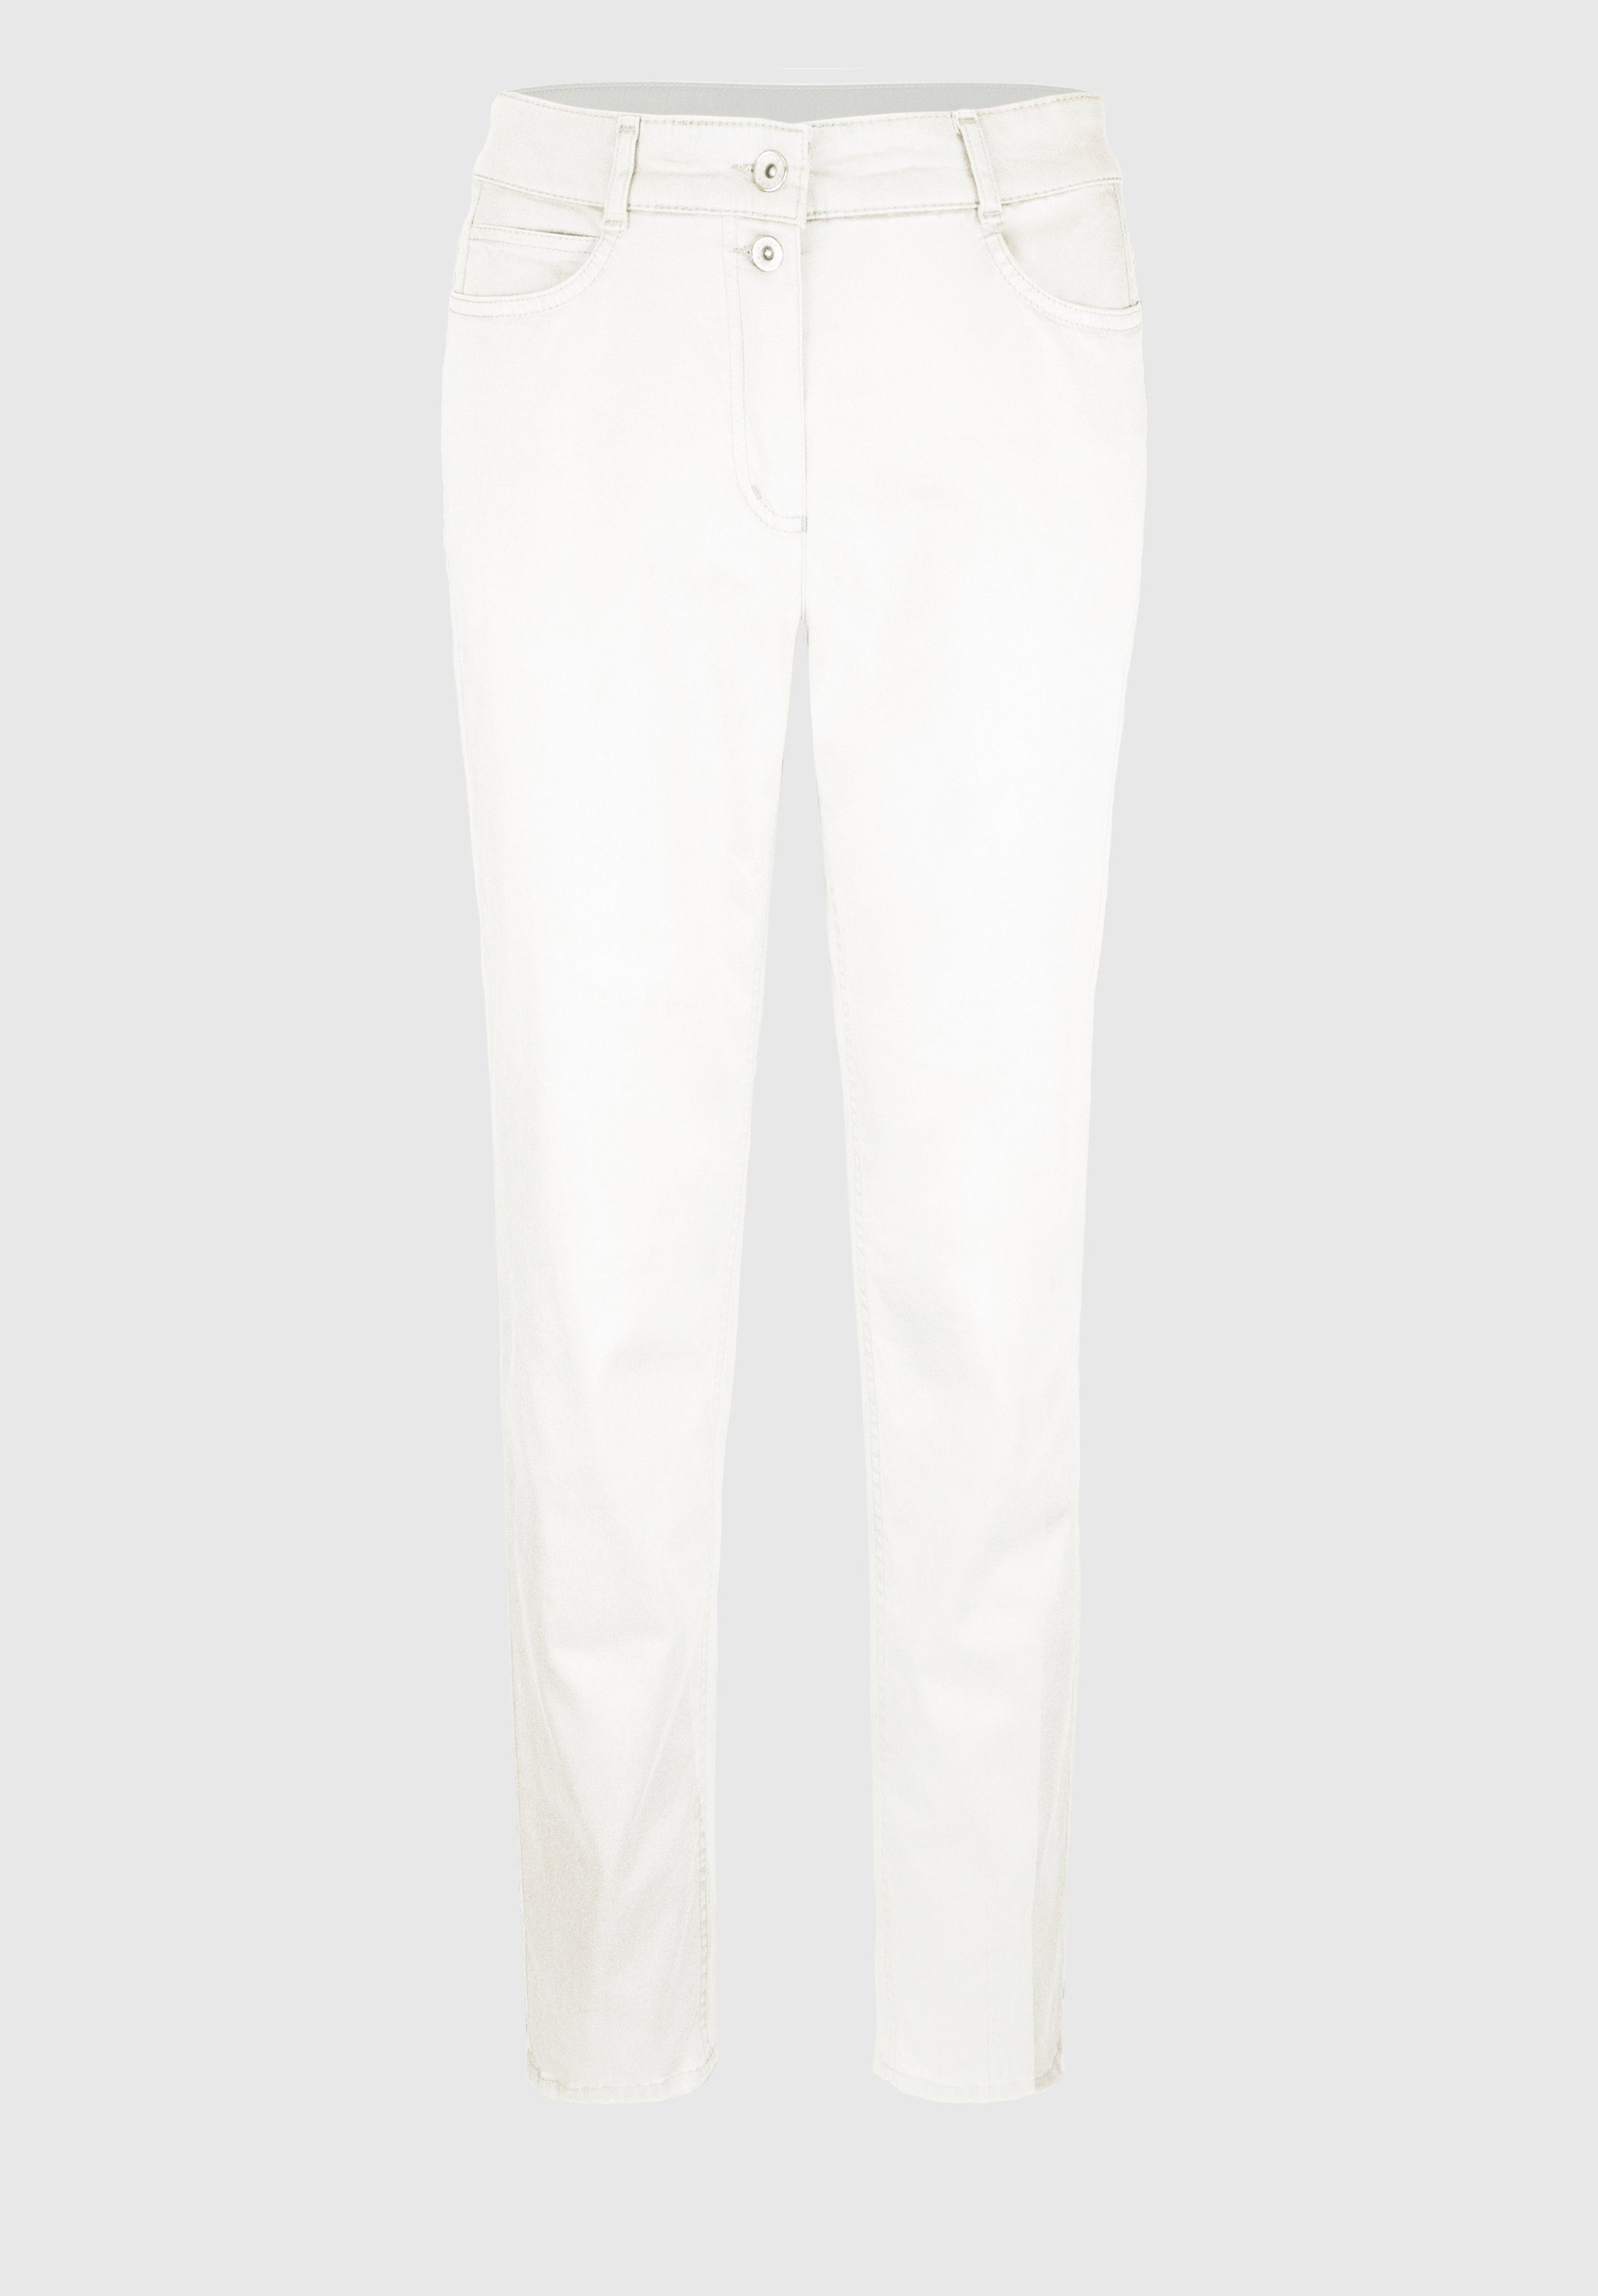 bianca 5-Pocket-Jeans DENVER ivory | Stretchjeans